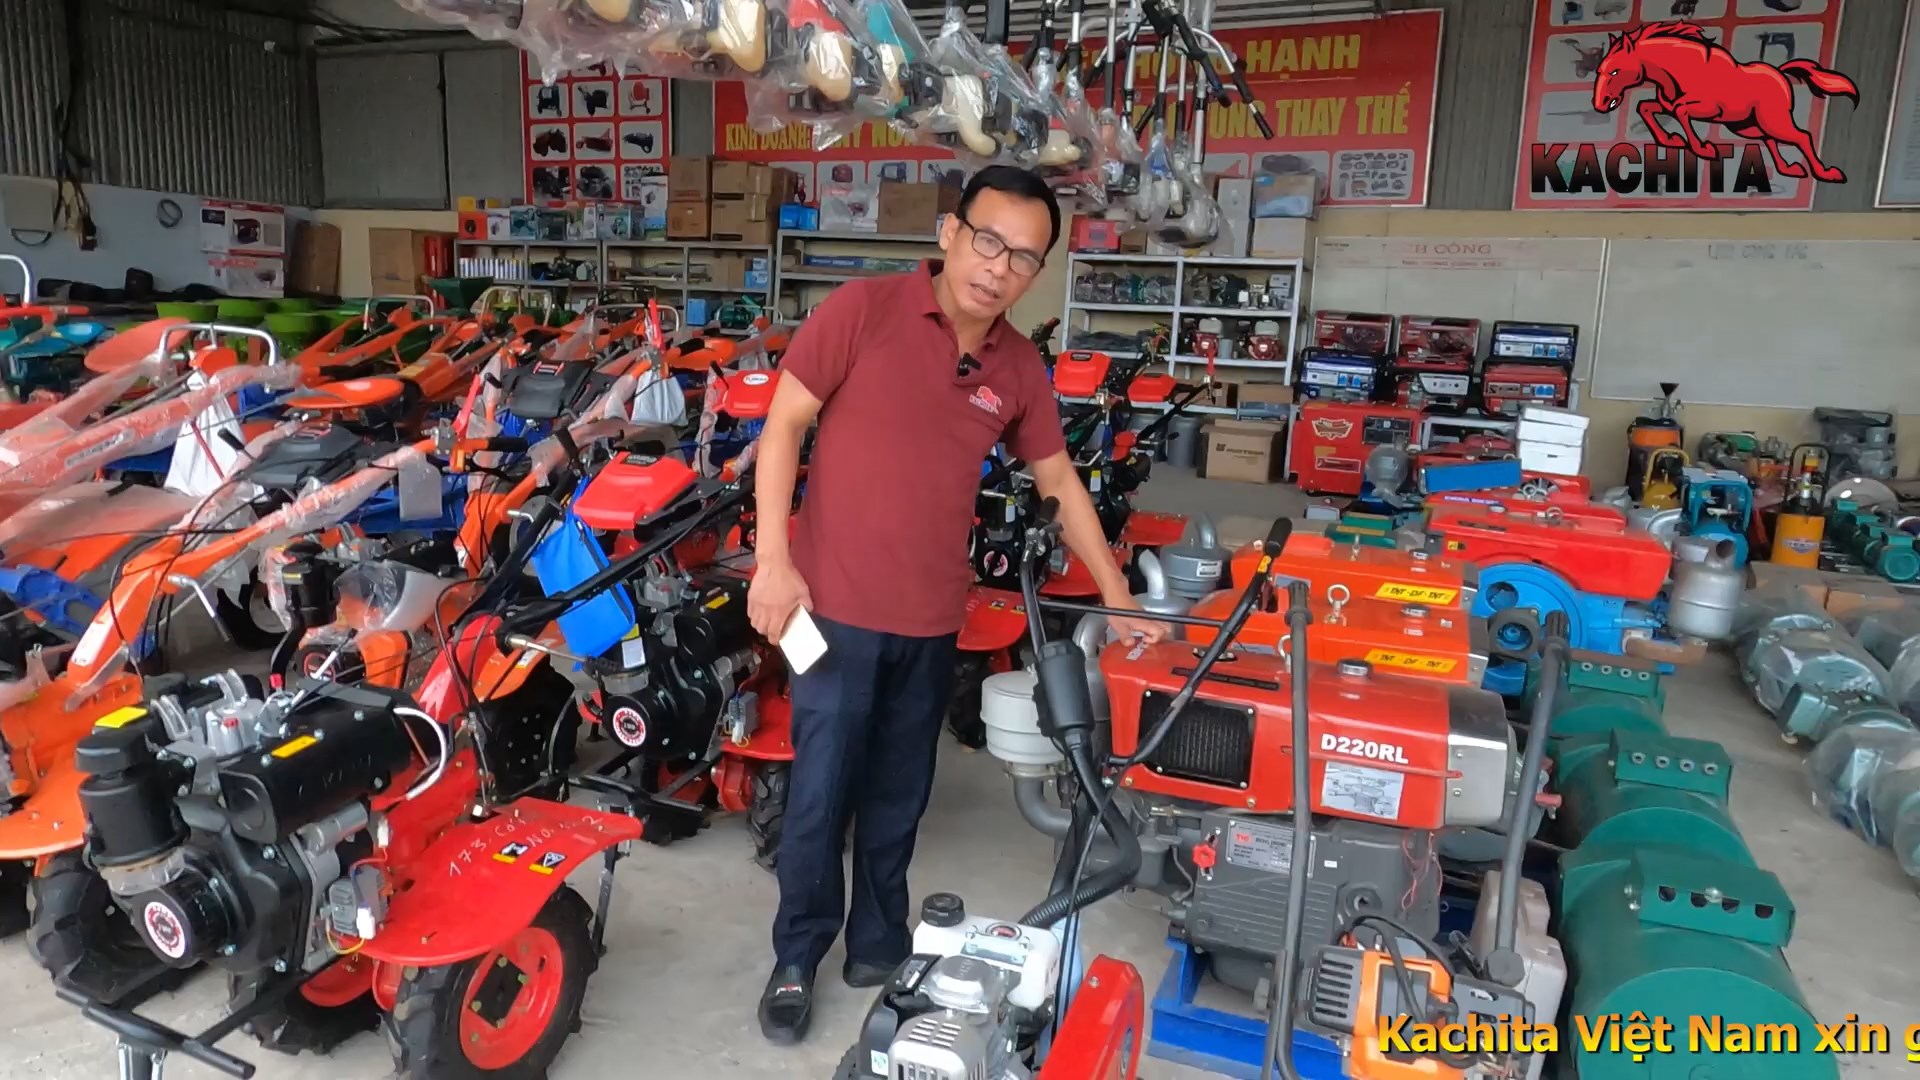 Giới thiệu đại lý máy xới đất Kachita Hồng Hạnh tại Đoan Hùng Phú Thọ